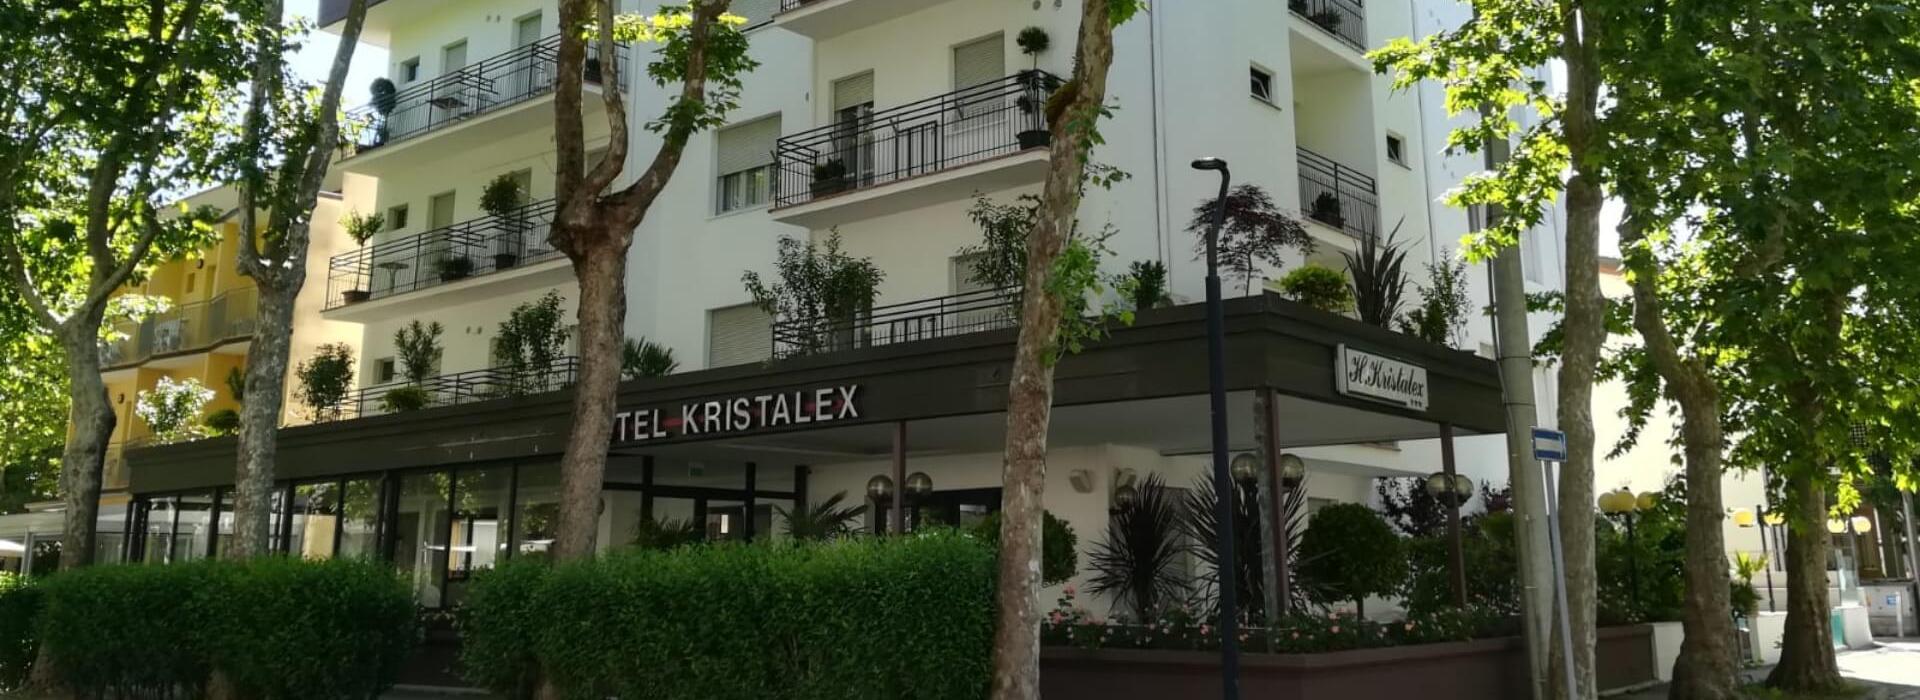 hotelkristalex en july 015